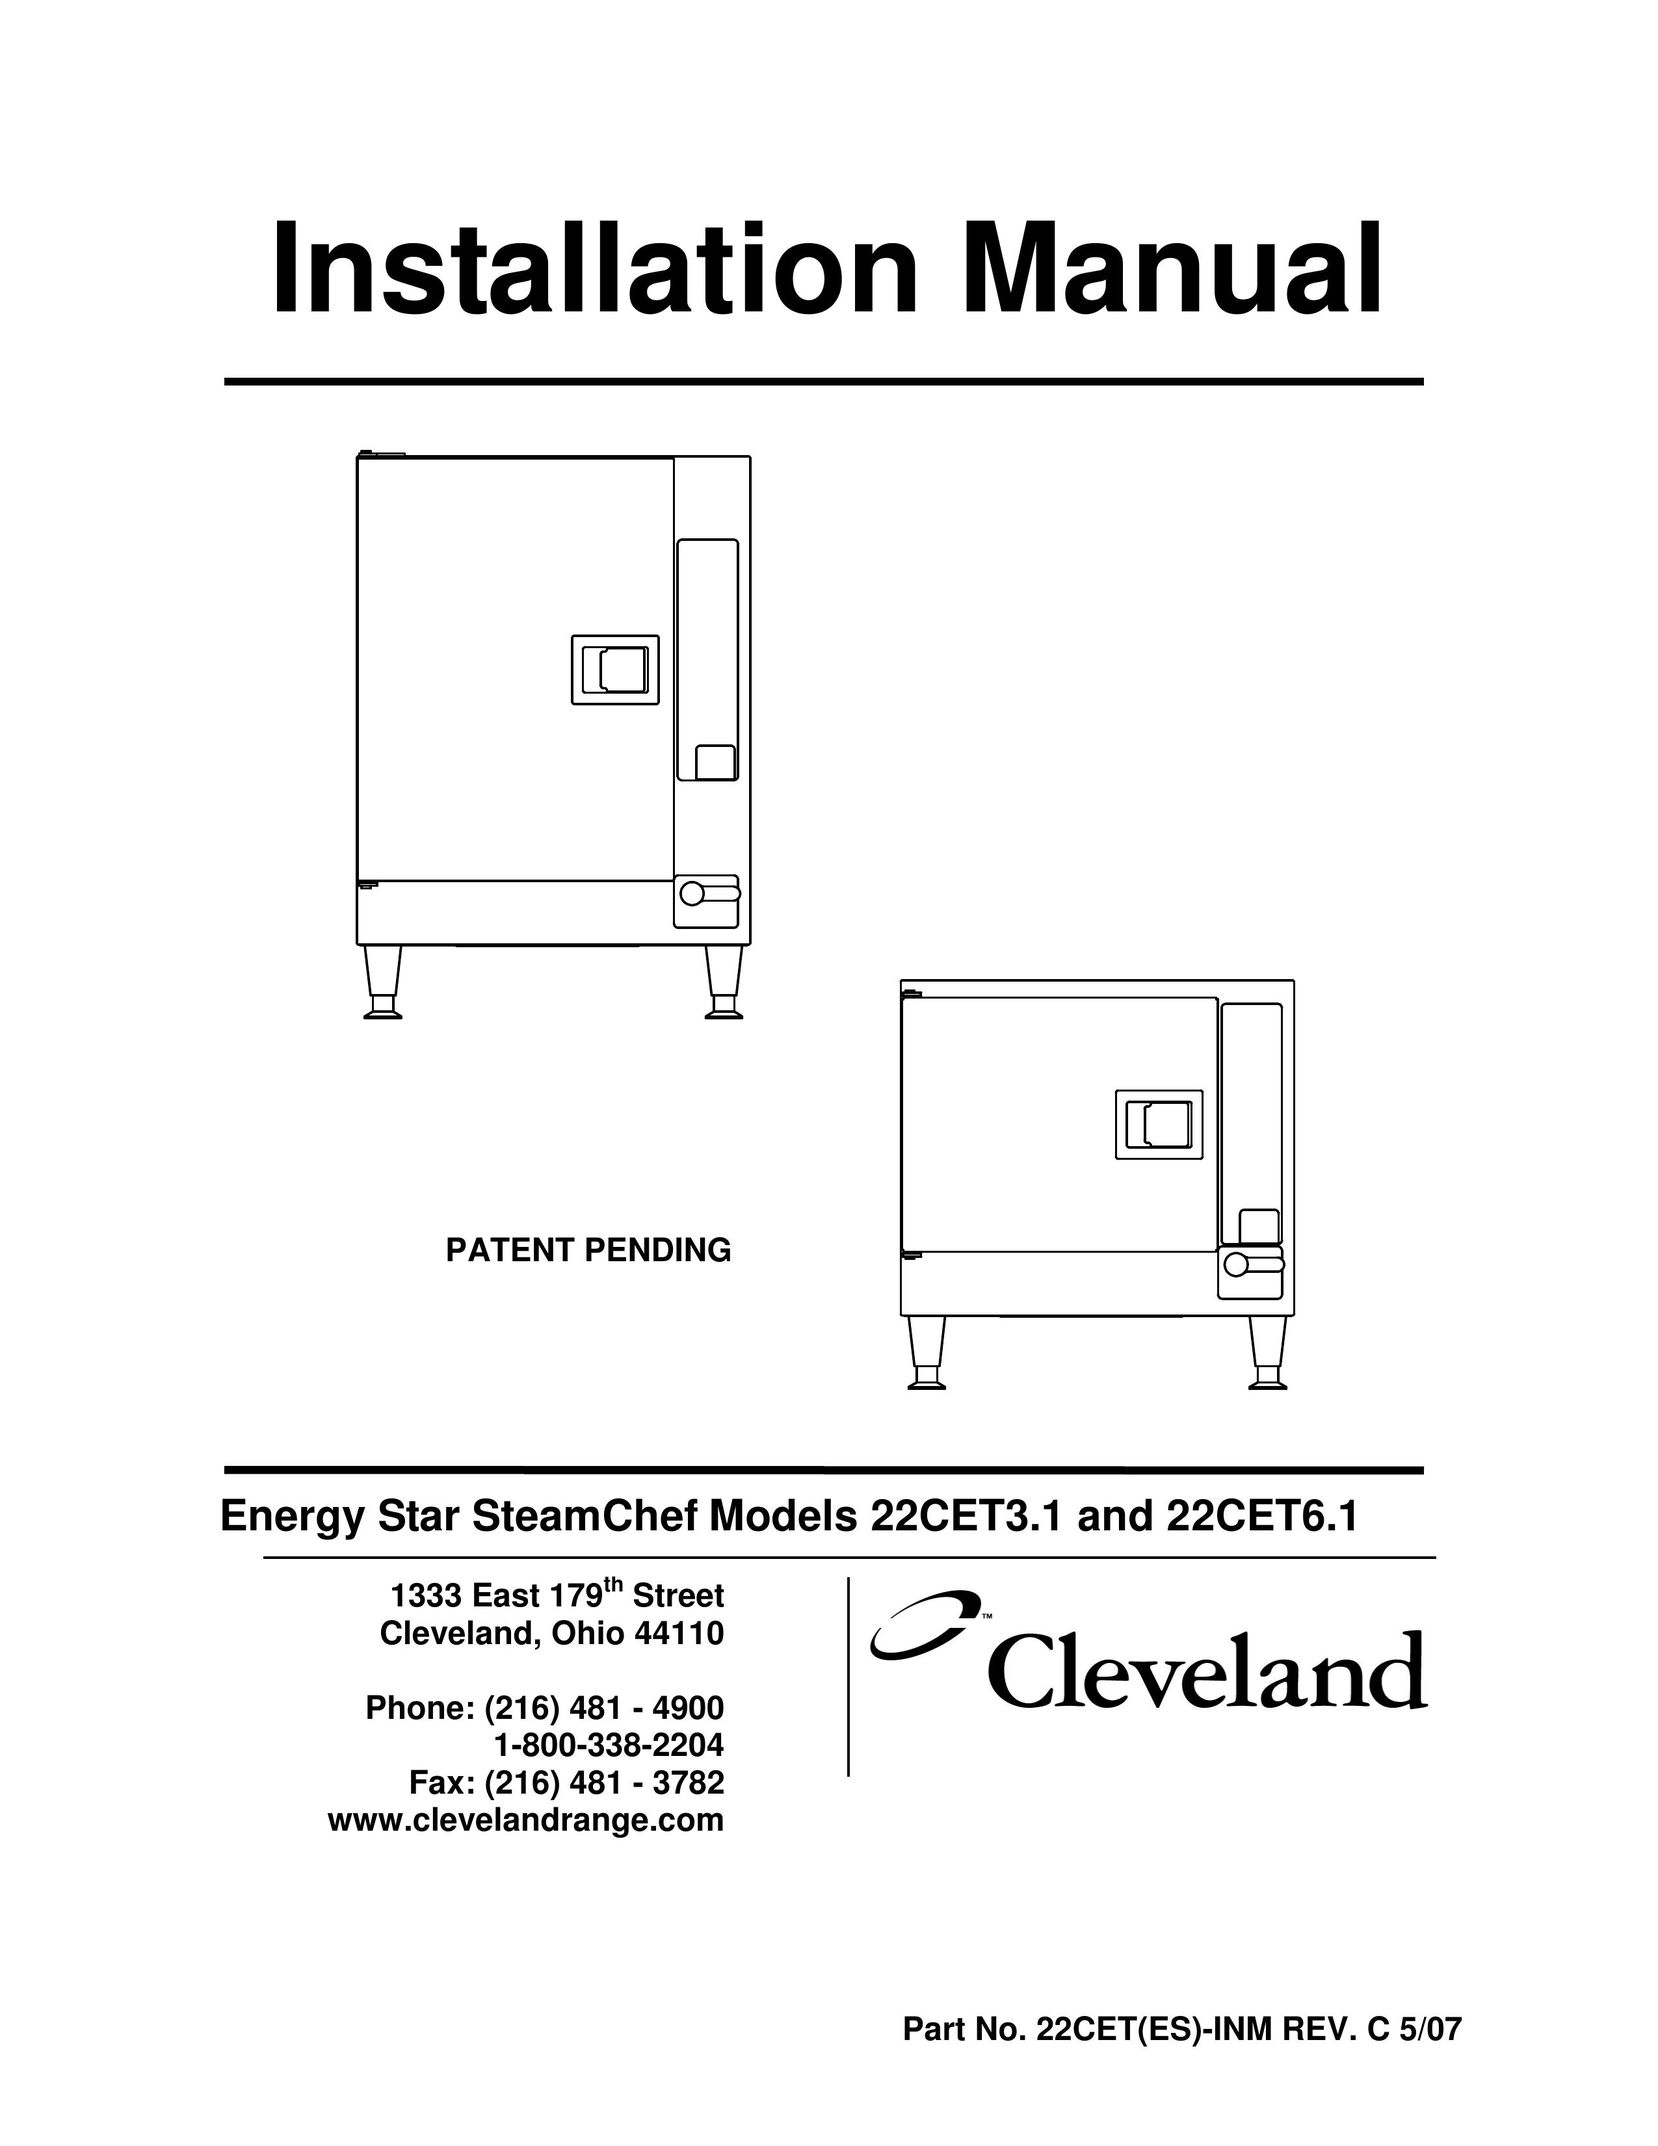 Cleveland Range 22CET6.1 Electric Steamer User Manual